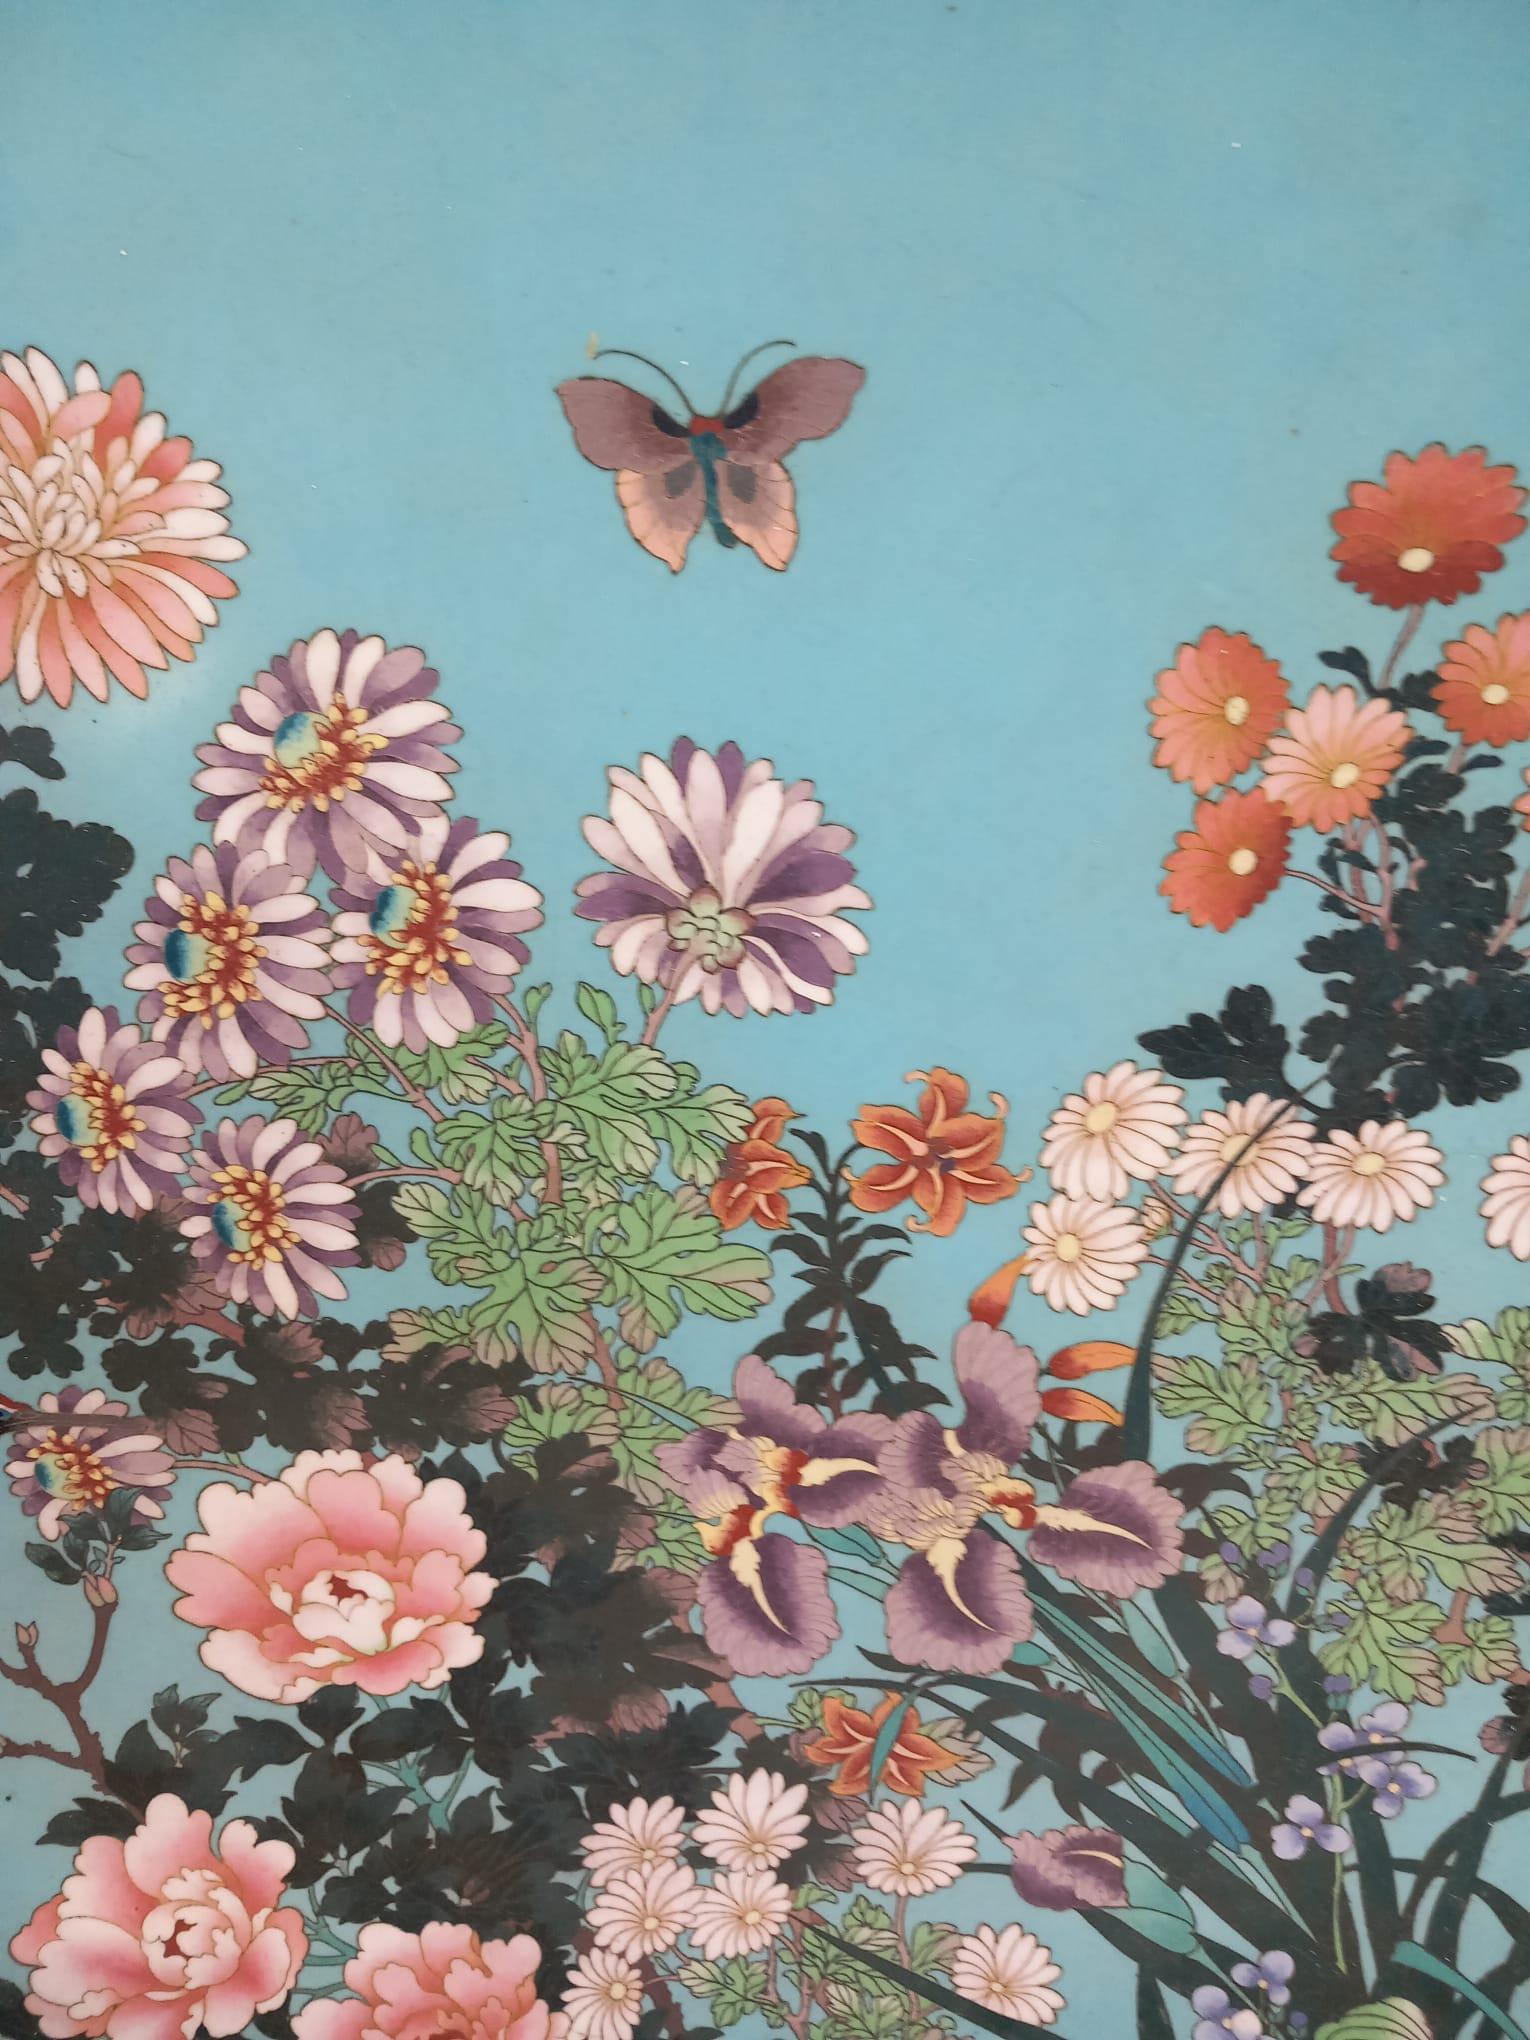 Un grand chargeur japonais antique en émail cloisonné de la période Meiji, datant du dernier quart du XIXe siècle.
Le chargeur est décoré d'une cigogne volante devant un magnifique éventail de fleurs telles que chrysanthèmes, pivoines, myosotis,